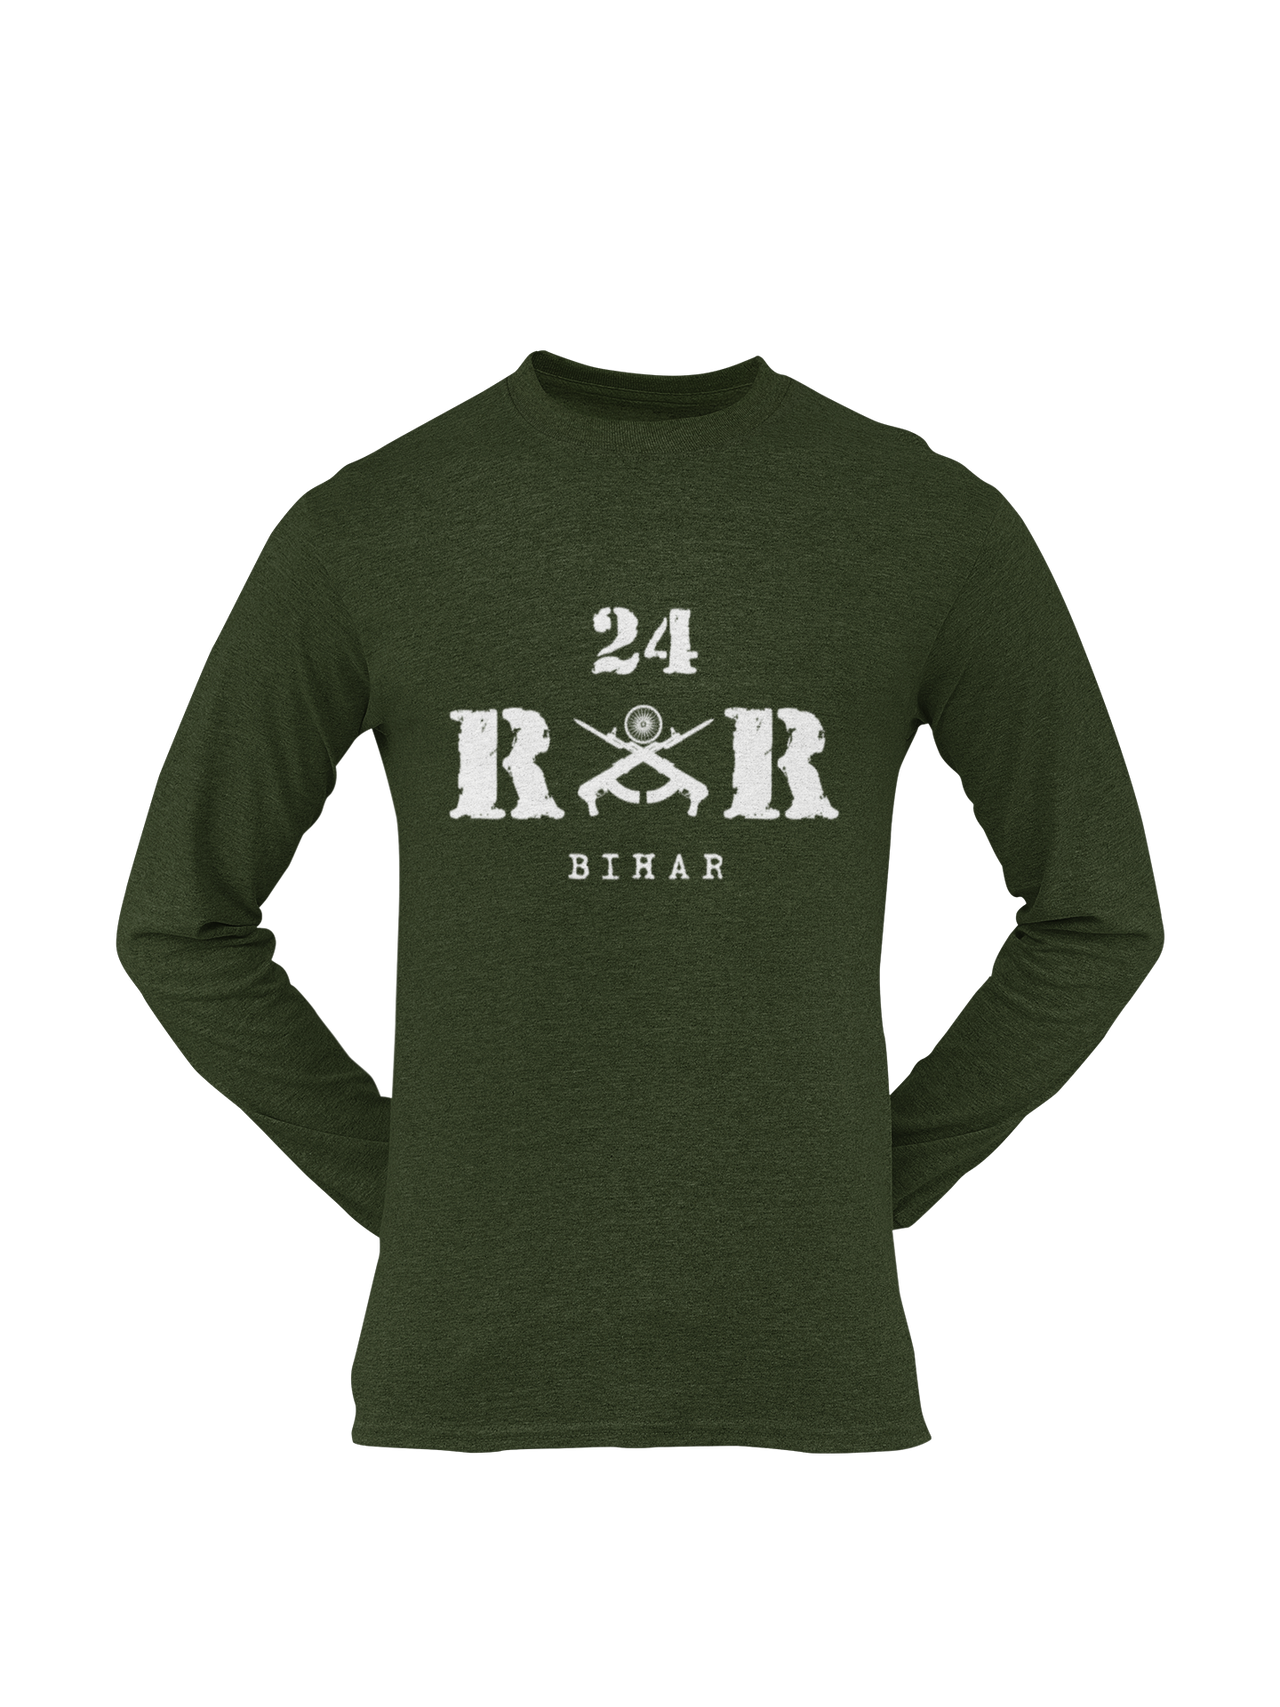 Rashtriya Rifles T-shirt - 24 RR Bihar (Men)